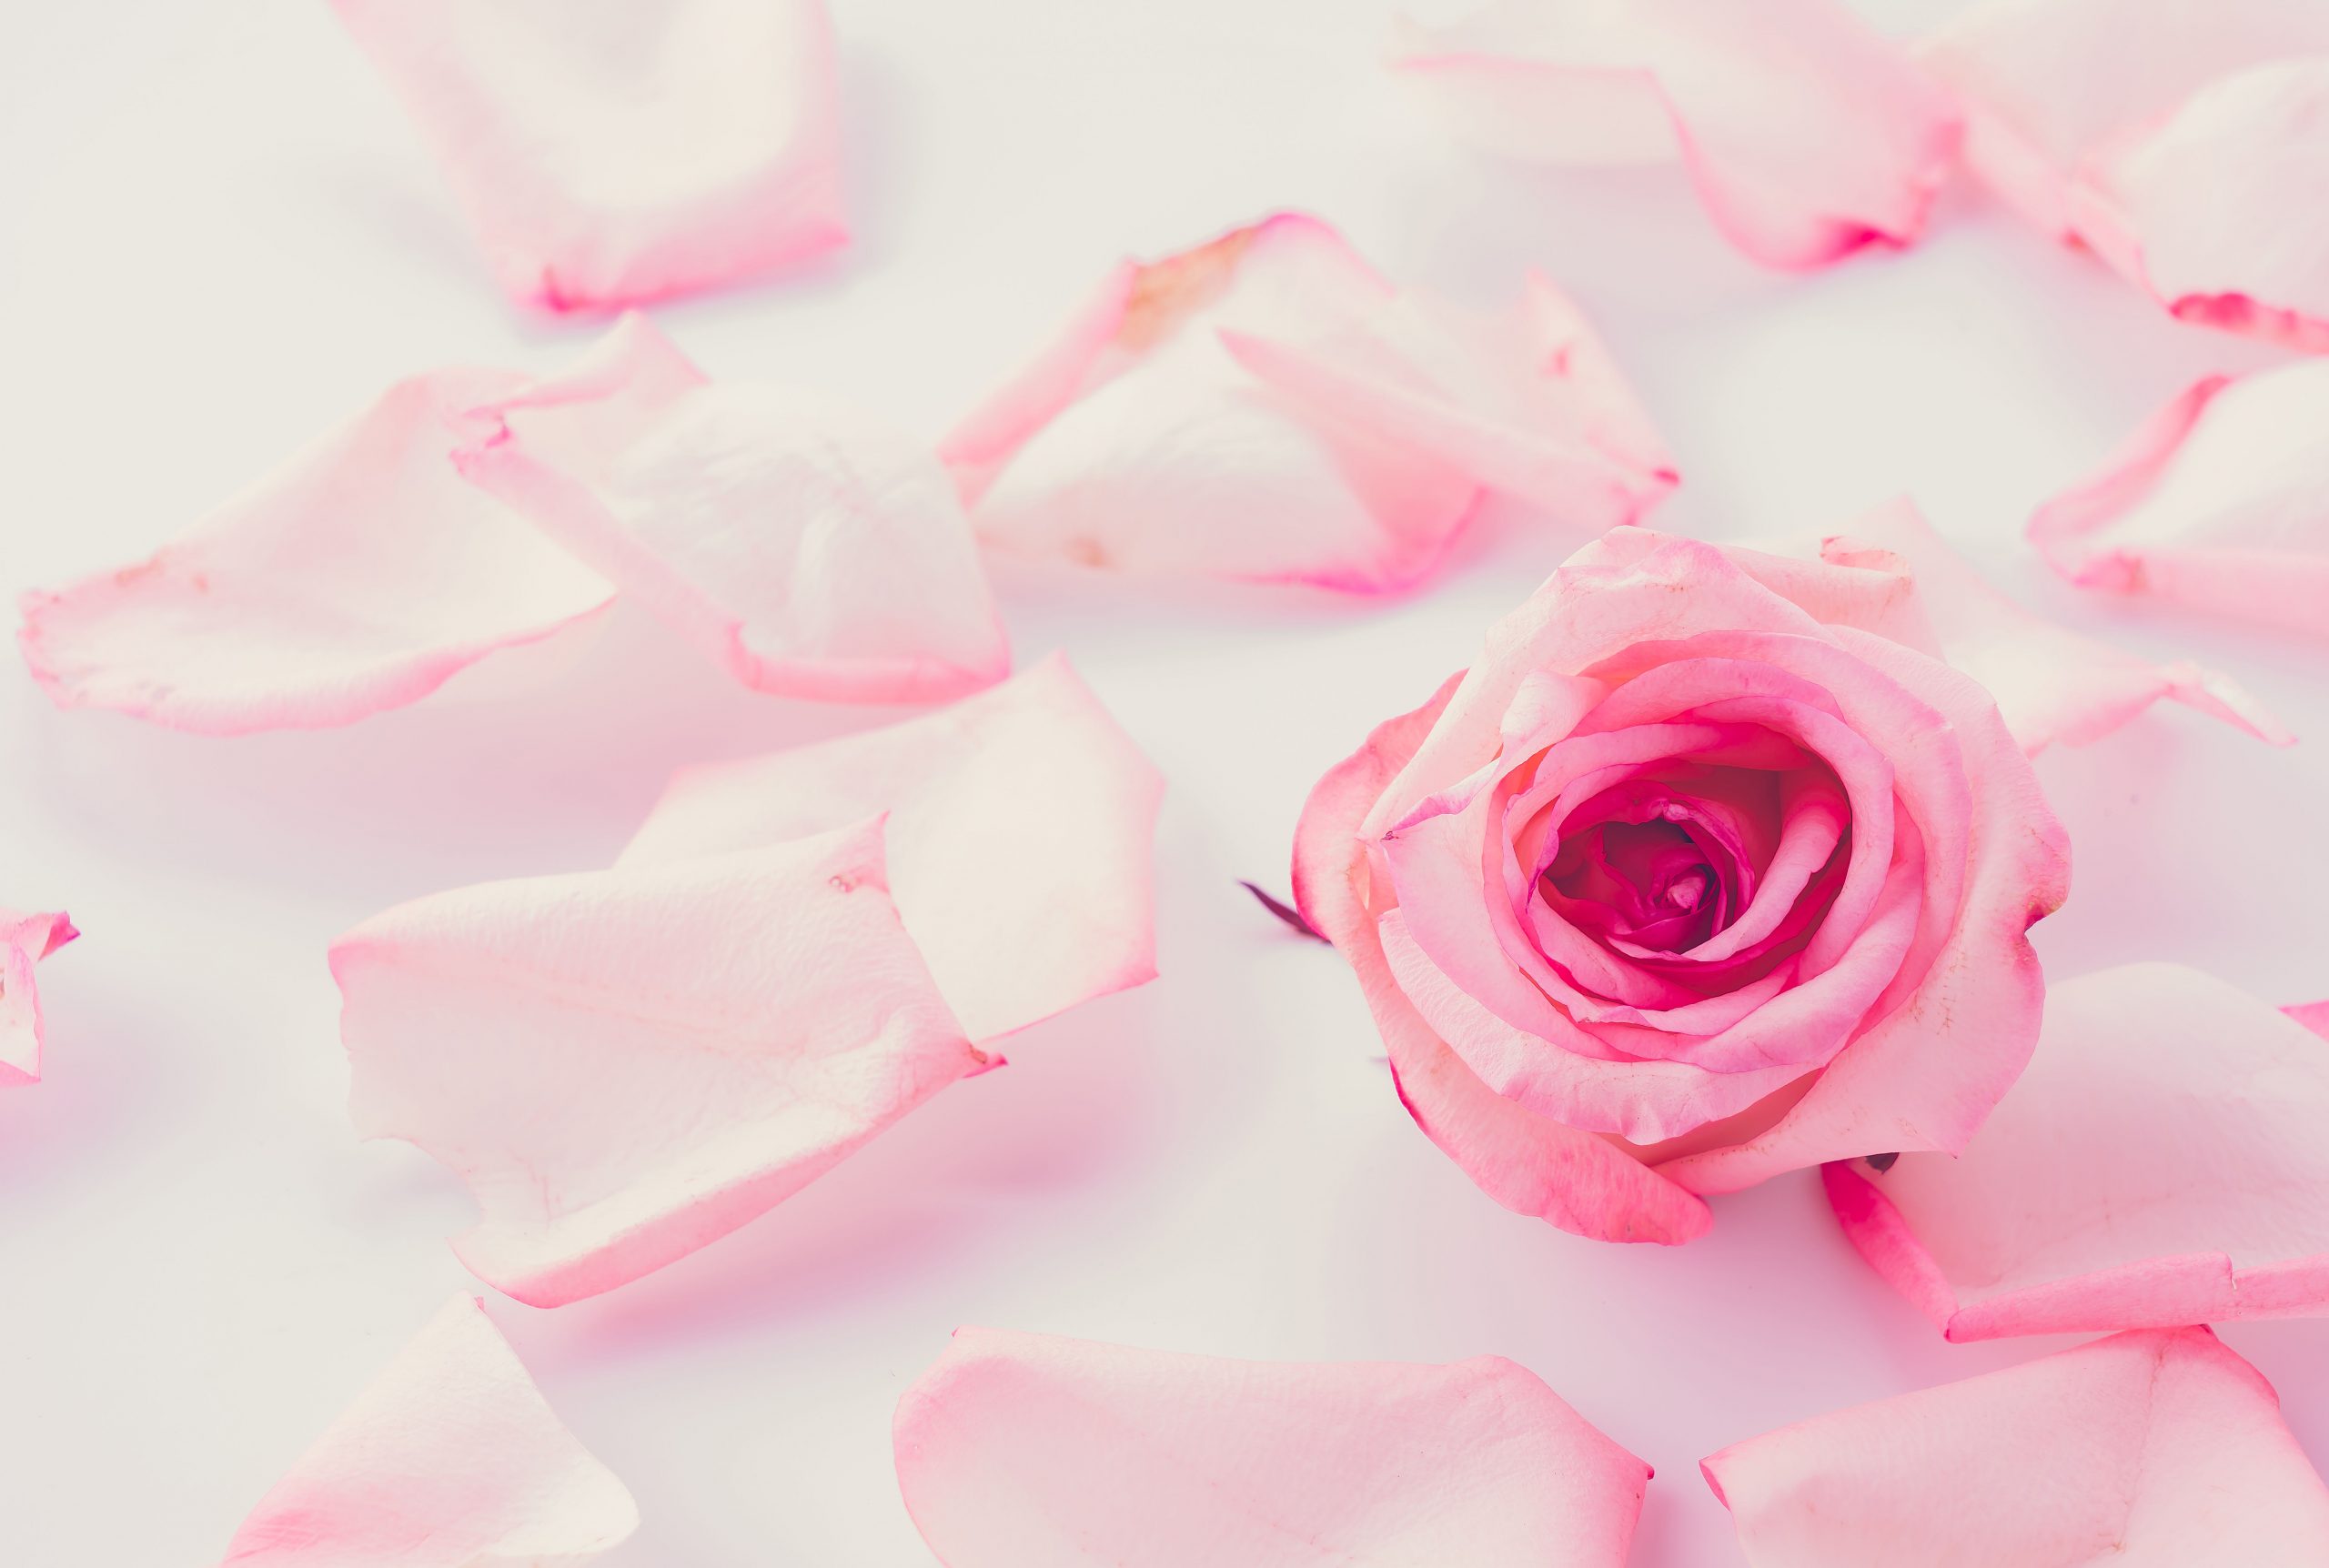 Happy Rose Day: रोज डे पर मिले गुलाब तो ऐसे समझे फीलिंग्स, जानें किस रंग का क्या है मतलब